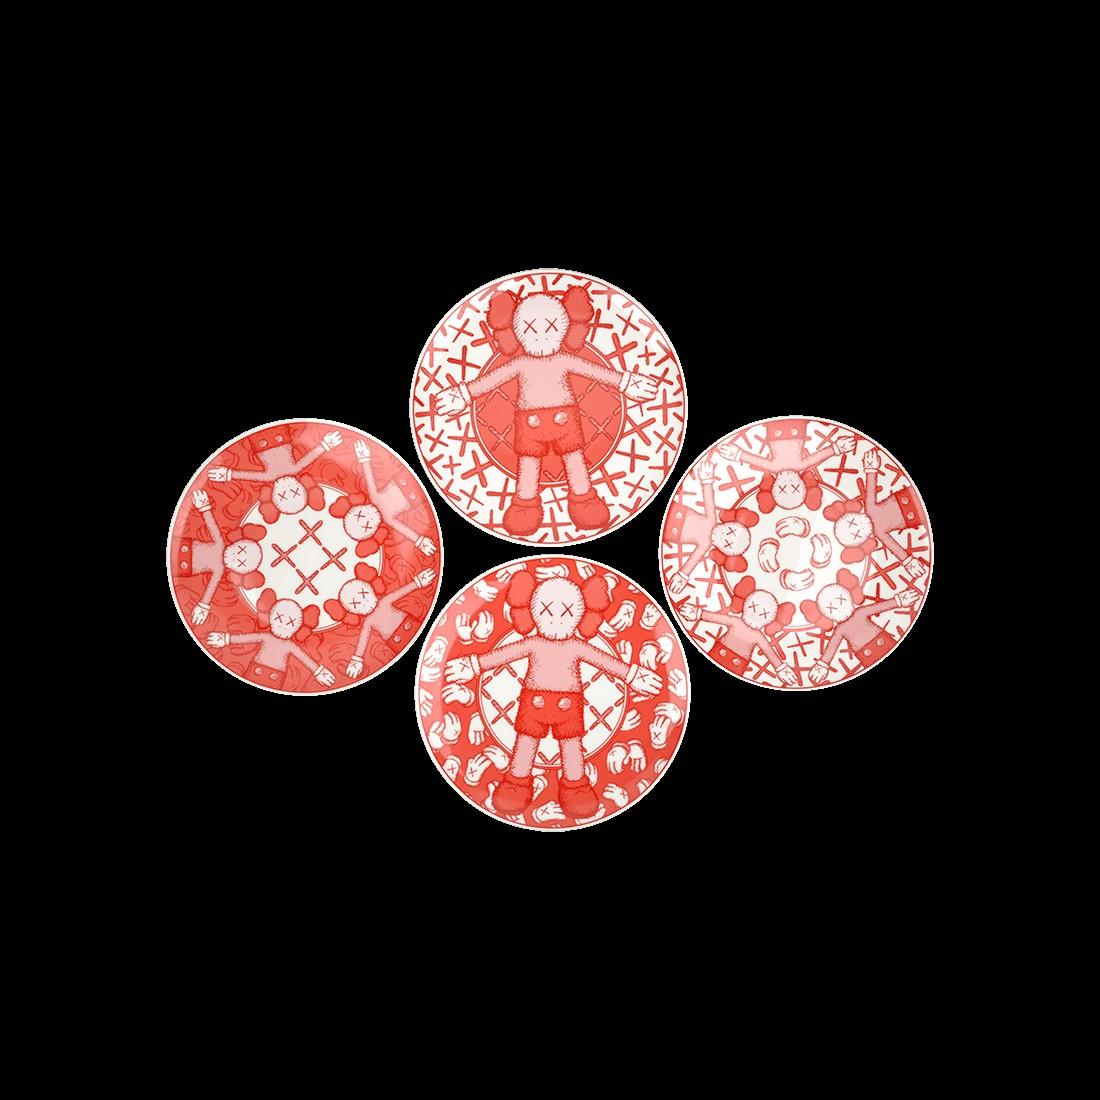 ~KAWS
Brian Donnelly
"KAWS Set de 4 assiettes rouges en céramique"
~Monnaie, Authenticité et exclusivité au Qatar~

Brian Donnelly est actuellement plus connu sous le nom d'artiste KAWS. KAWS est un artiste basé à New York qui s'est fait un nom en